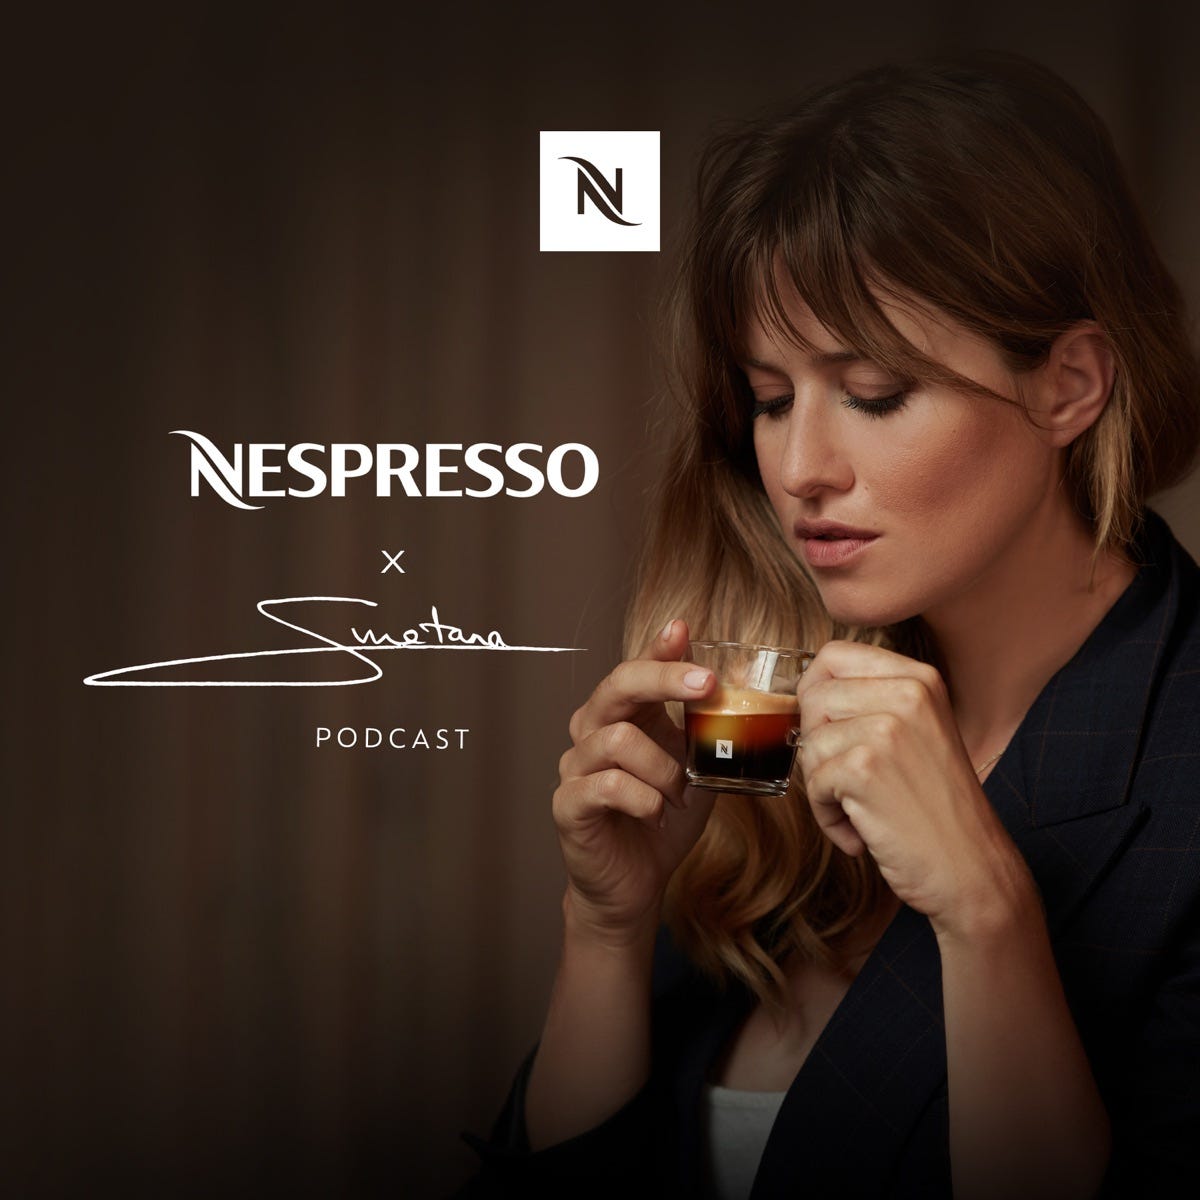 NespressoXSmetana – Podcast – Podtail